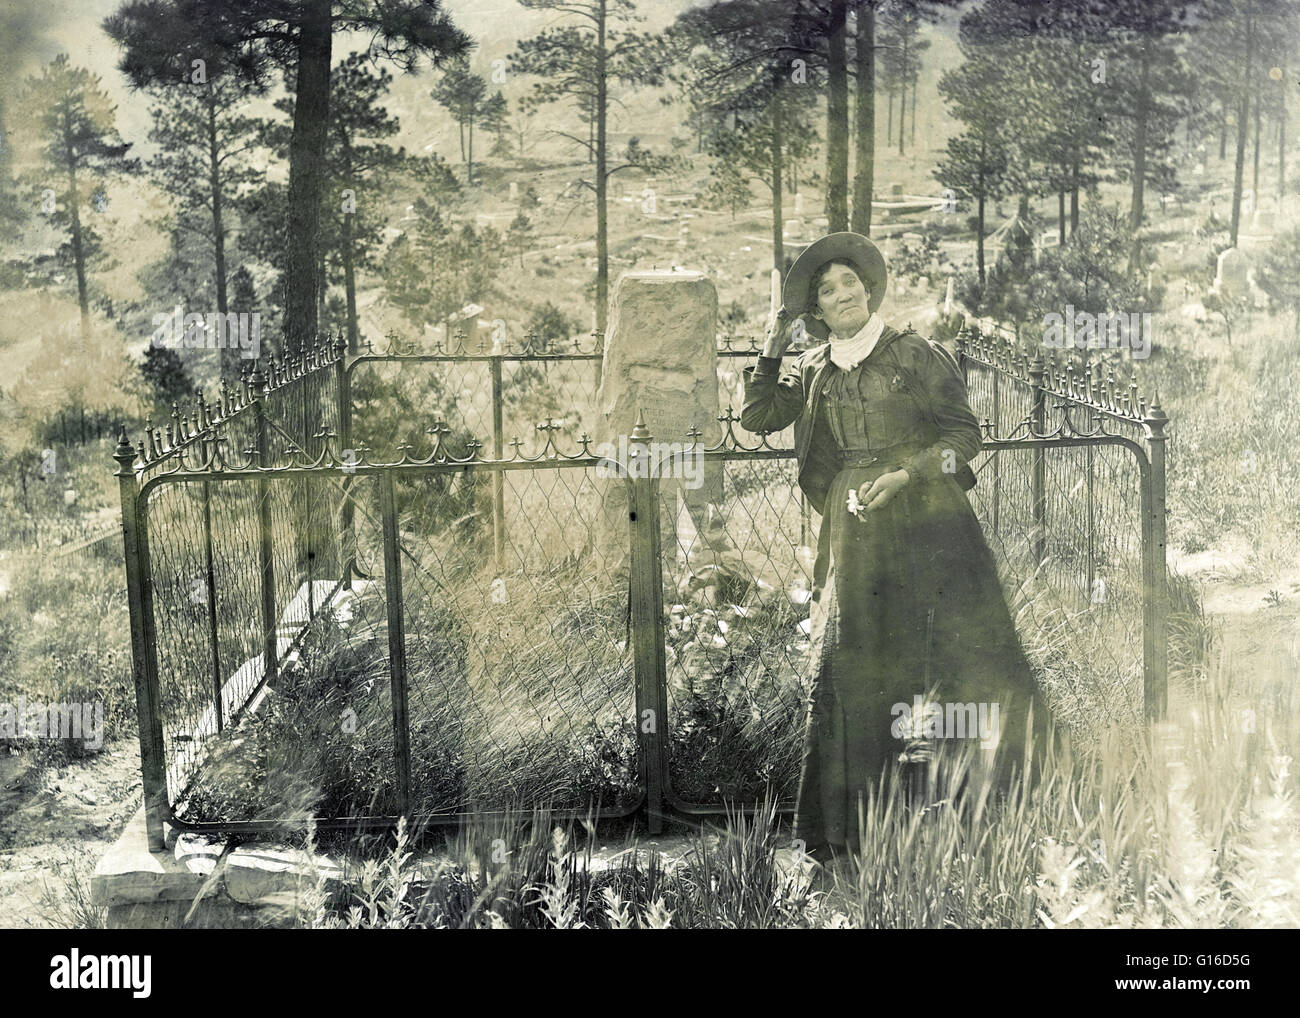 Martha Jane Burke, popolarmente noto come Calamity Jane, in piedi presso la tomba di Wild Bill Hickok in Mt. Il cimitero di Moria, Deadwood, South Dakota. Photogrpahed di J.A. Kumpf, 1903. Martha Jane Canary o Cannary (1 maggio 1852 - 1 agosto 1903), meglio noto come Foto Stock